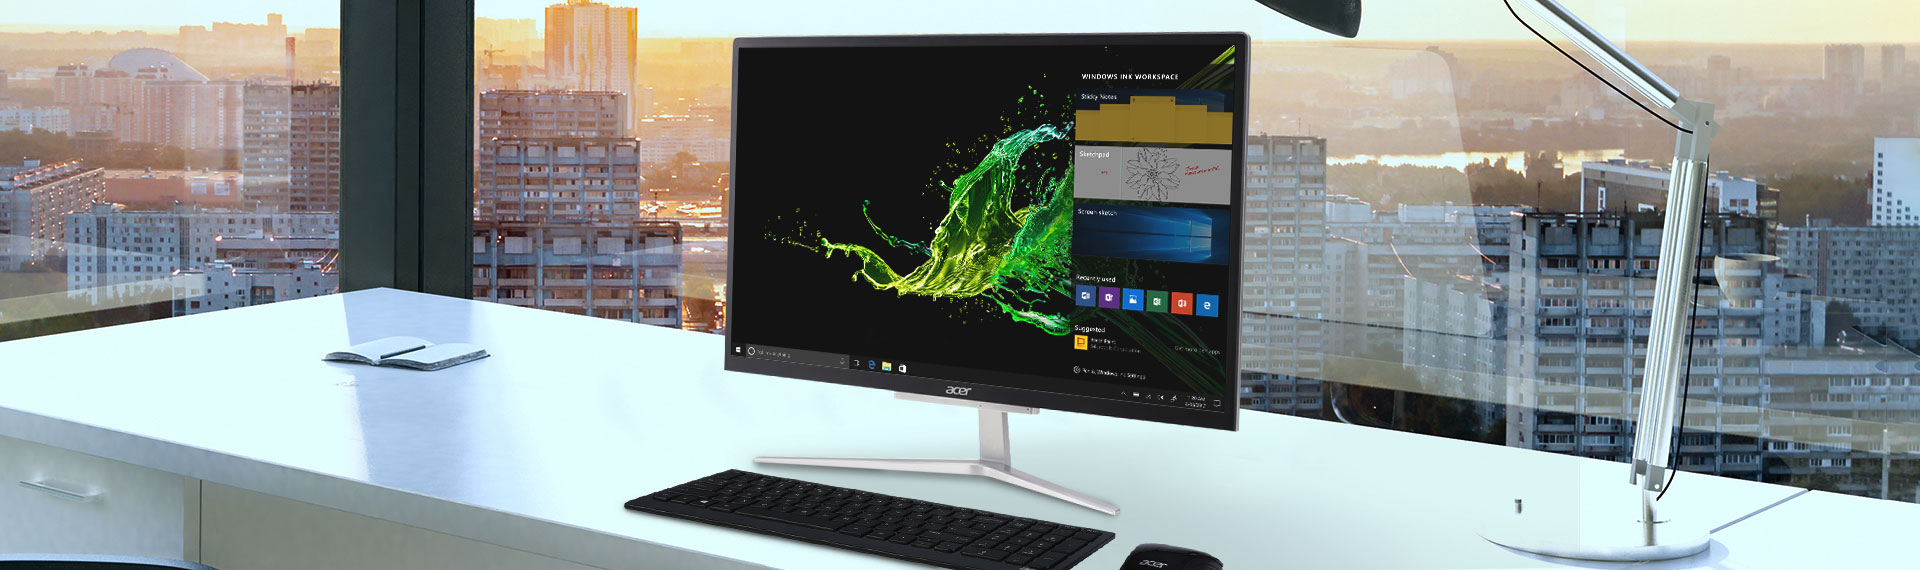 Ini Alasan Desktop AIO Acer Cocok untuk Kantor Kekinian